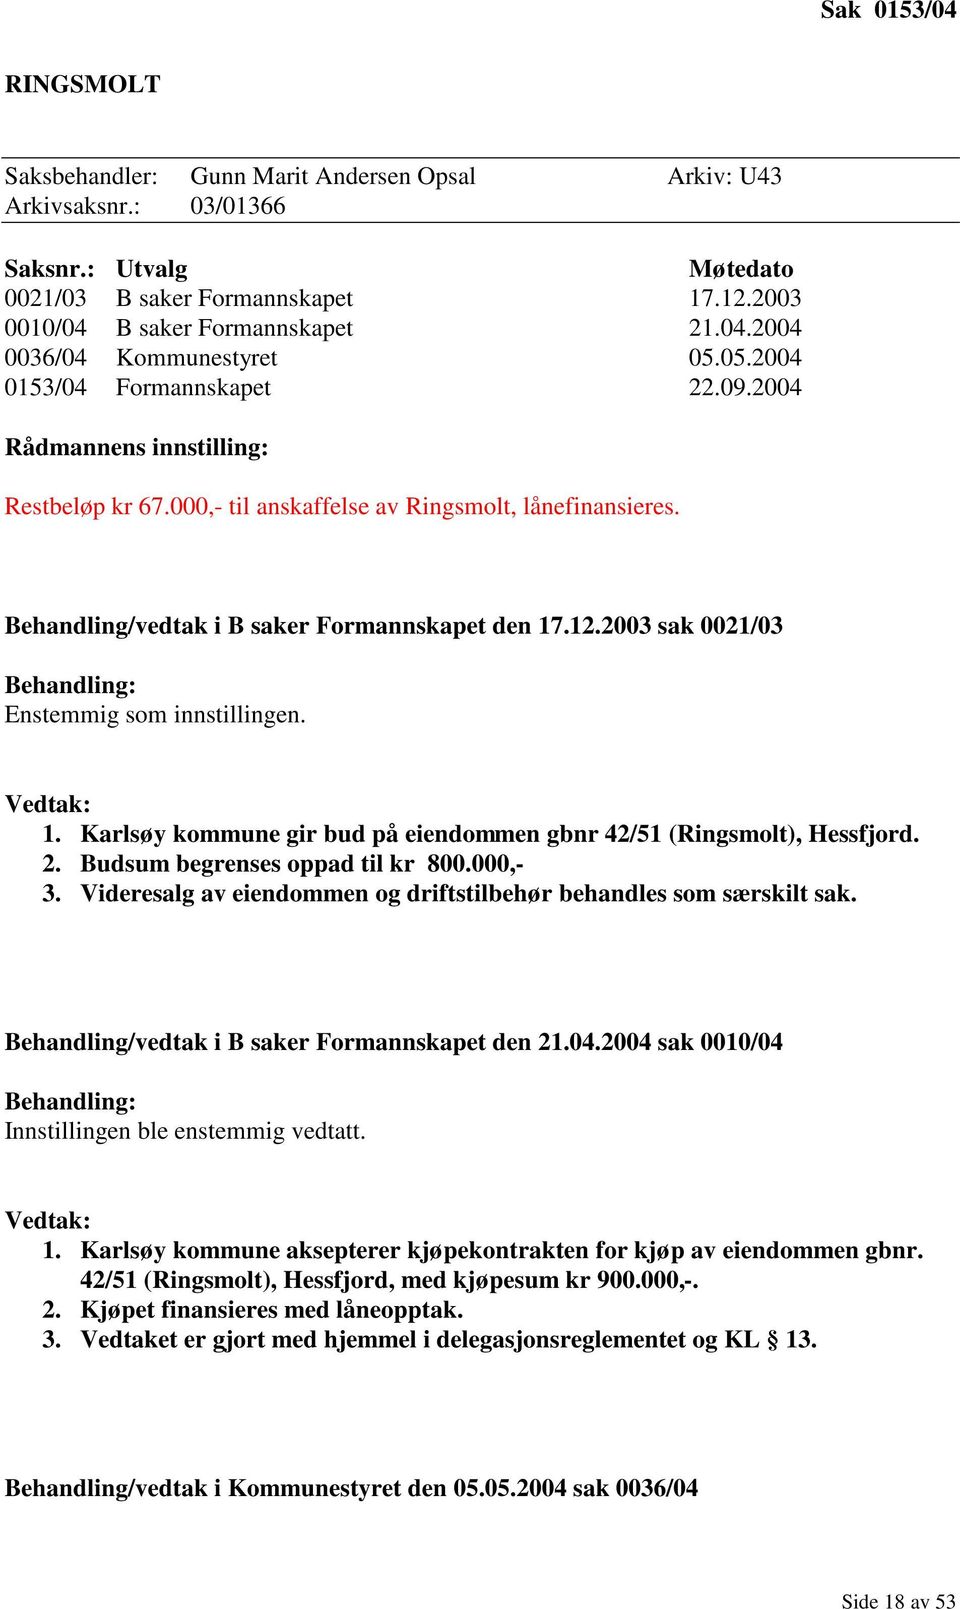 2003 sak 0021/03 Behandling: Enstemmig som innstillingen. Vedtak: 1. Karlsøy kommune gir bud på eiendommen gbnr 42/51 (Ringsmolt), Hessfjord. 2. Budsum begrenses oppad til kr 800.000,- 3.